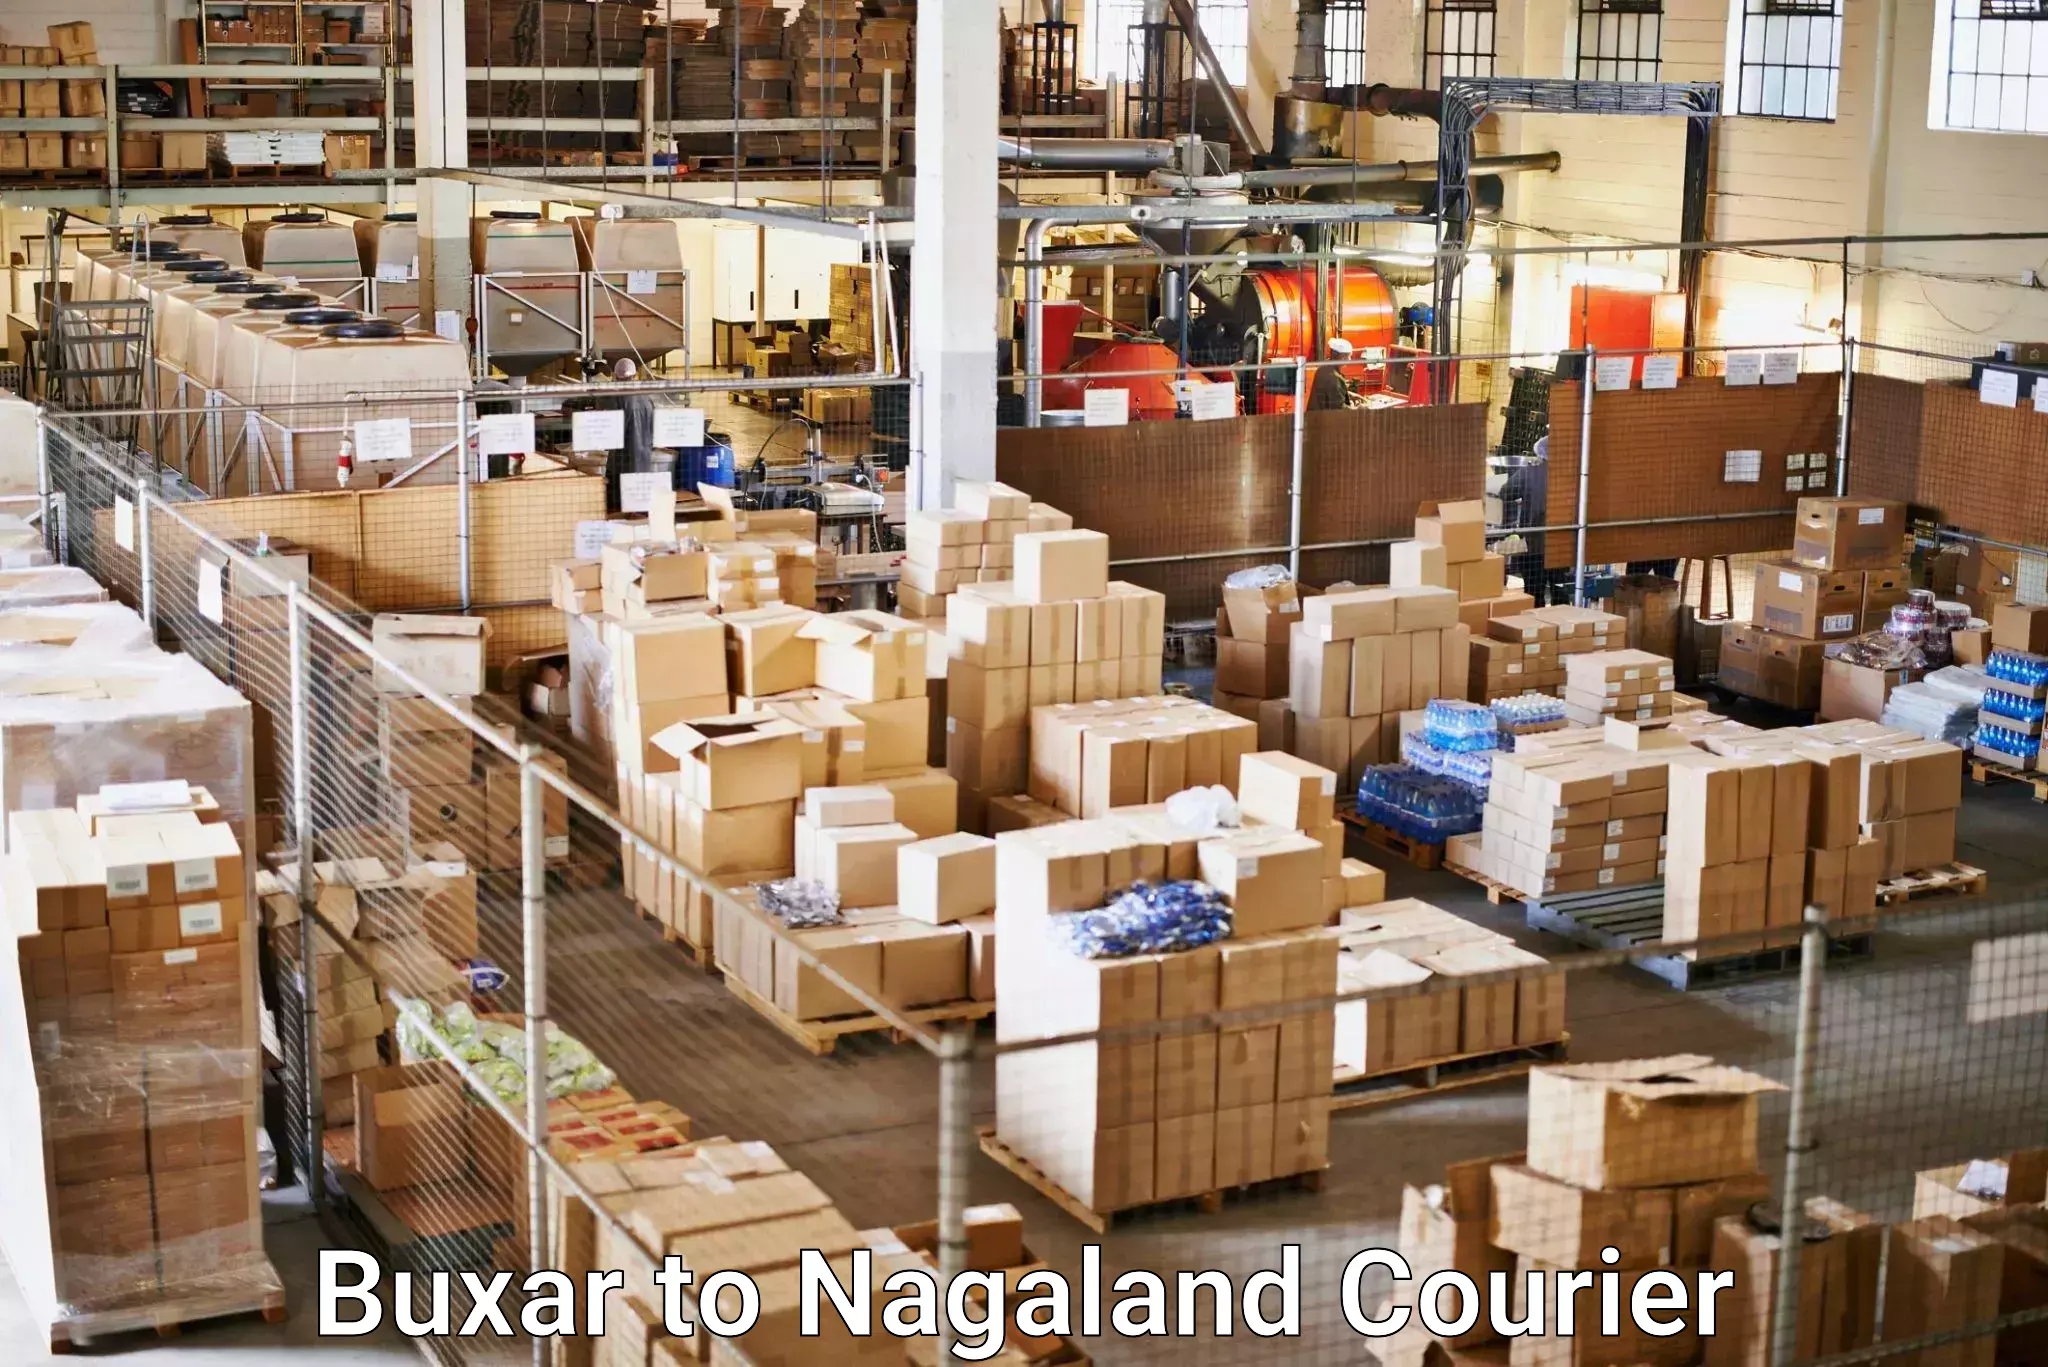 Express logistics service Buxar to Nagaland